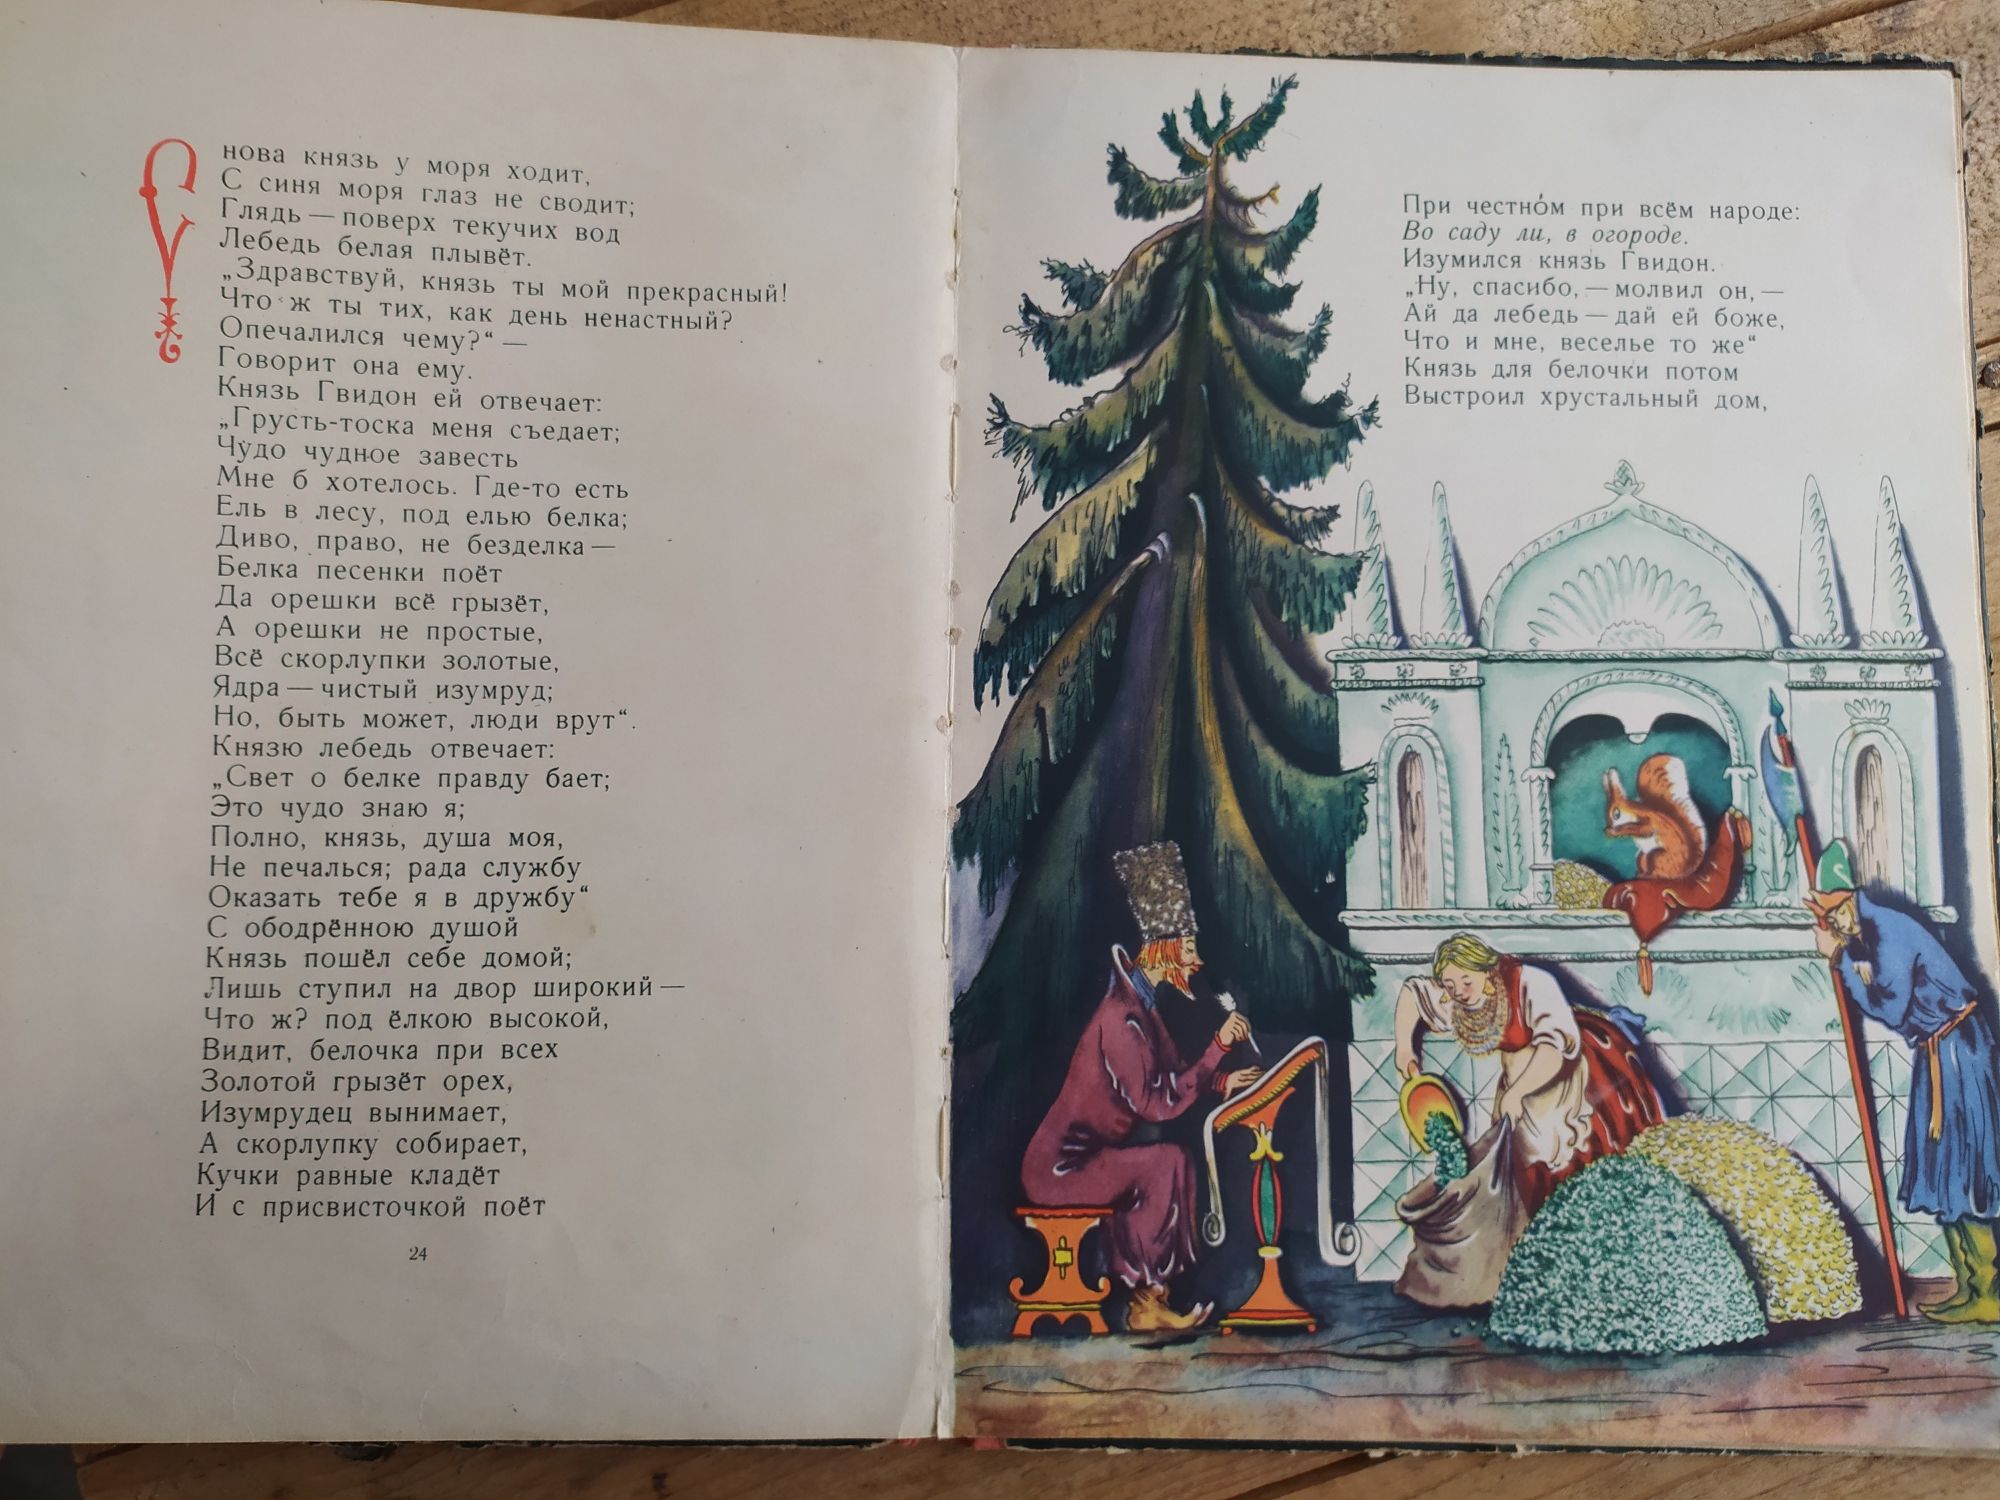 Сказка о царе Салтане Пушкин 1963г.